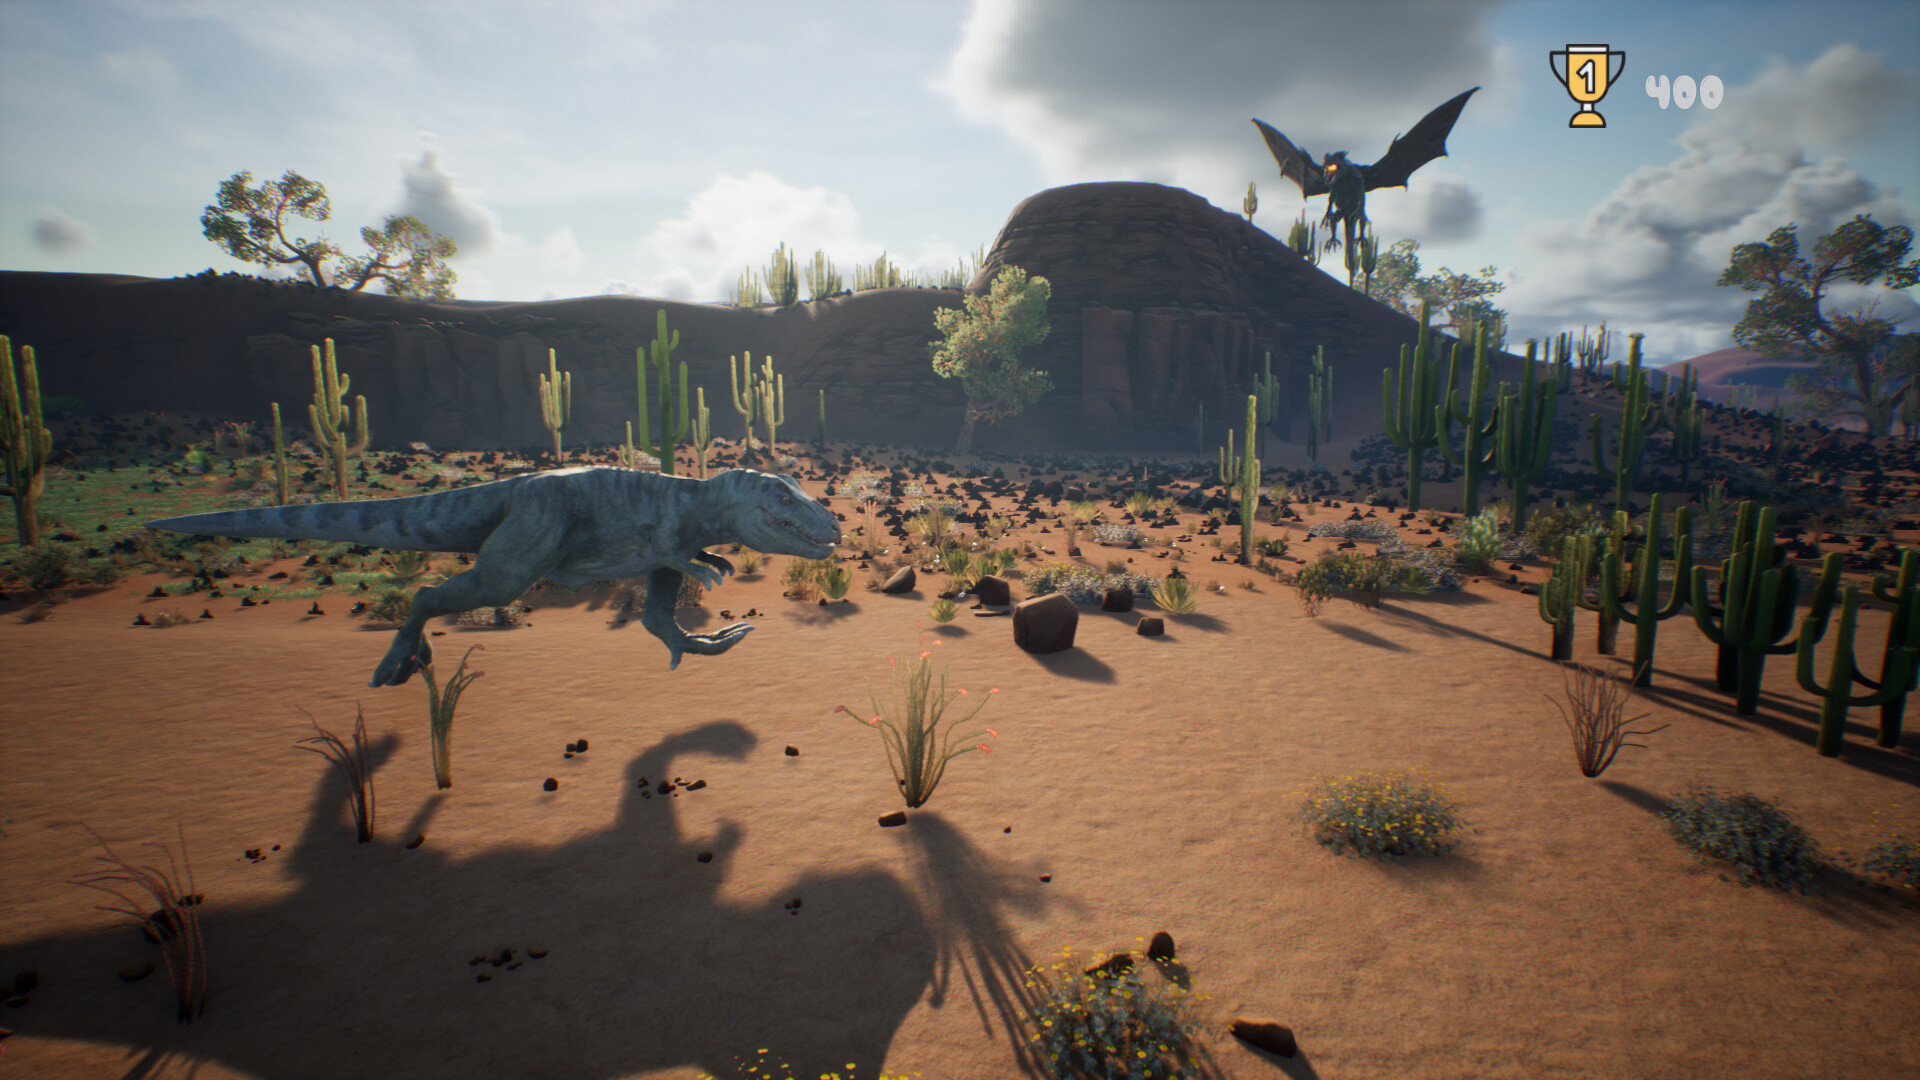 T-Rex Dinosaur Game on Steam